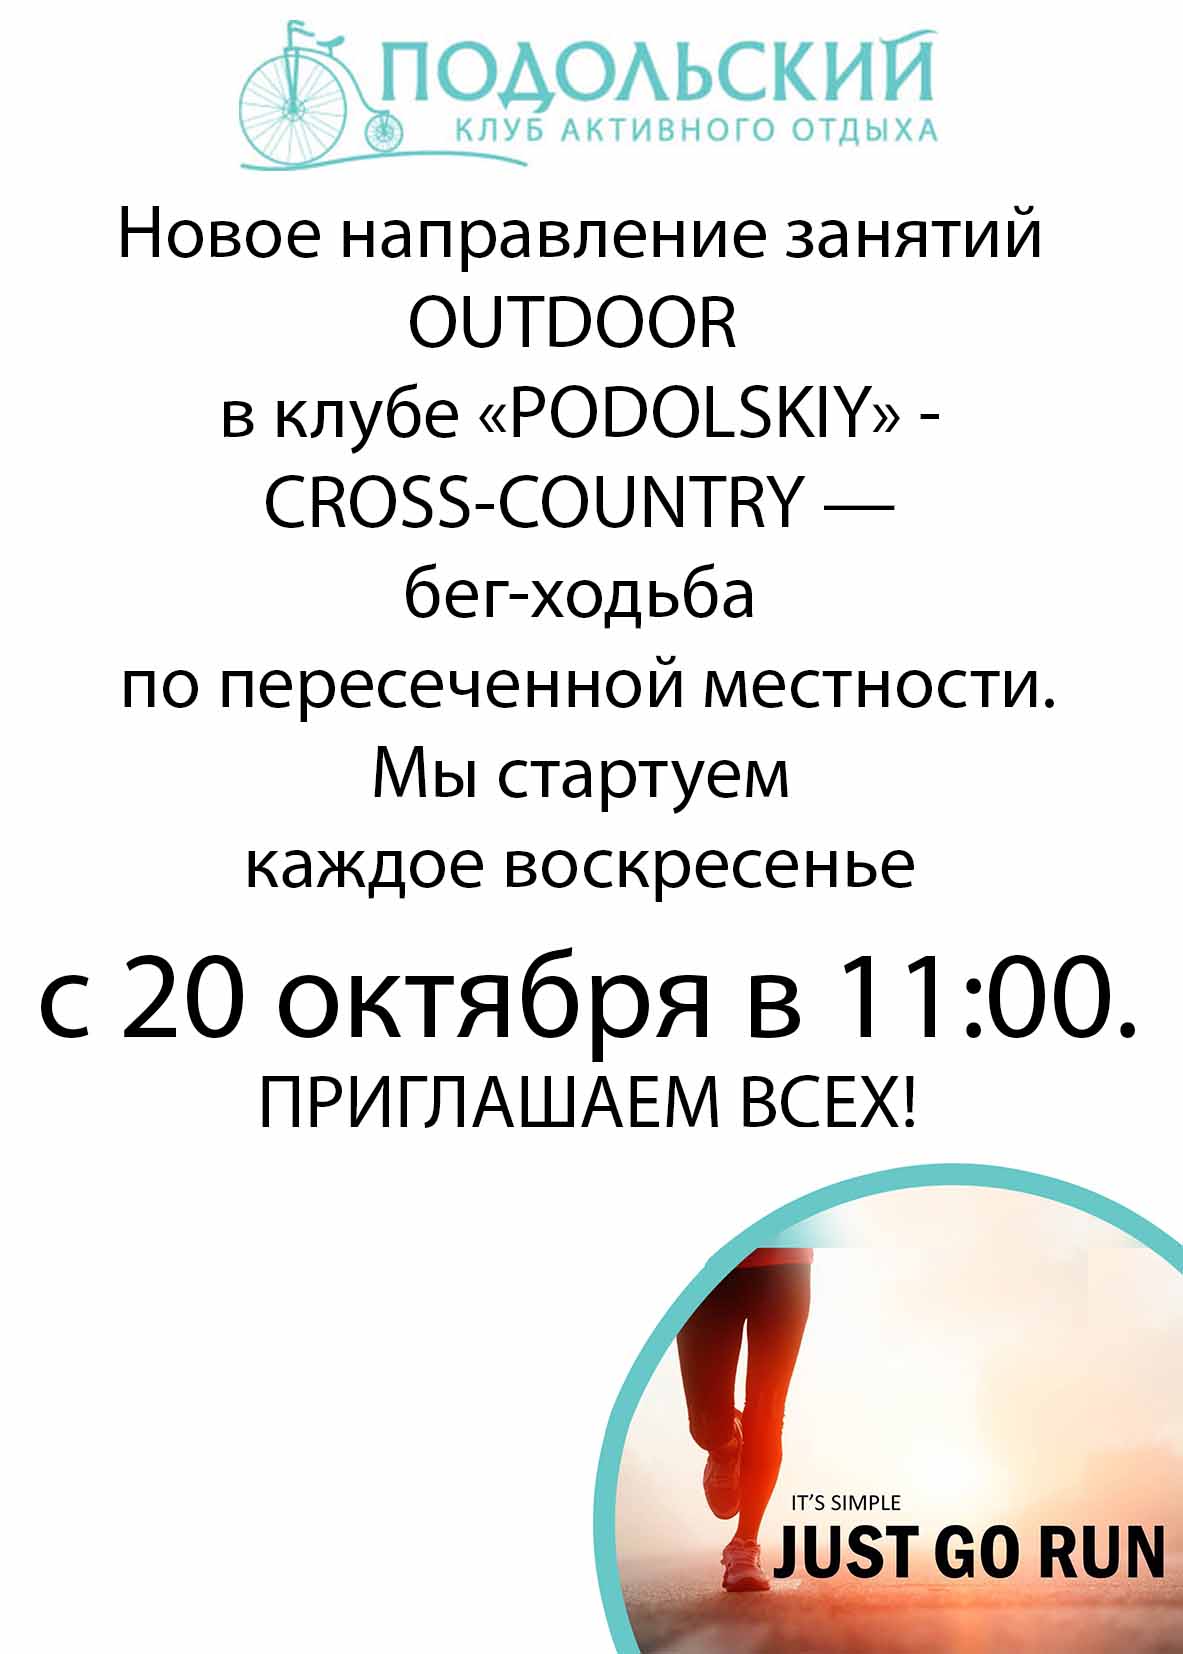 Cross-country - новая OUTDOOR программа от Подольского!